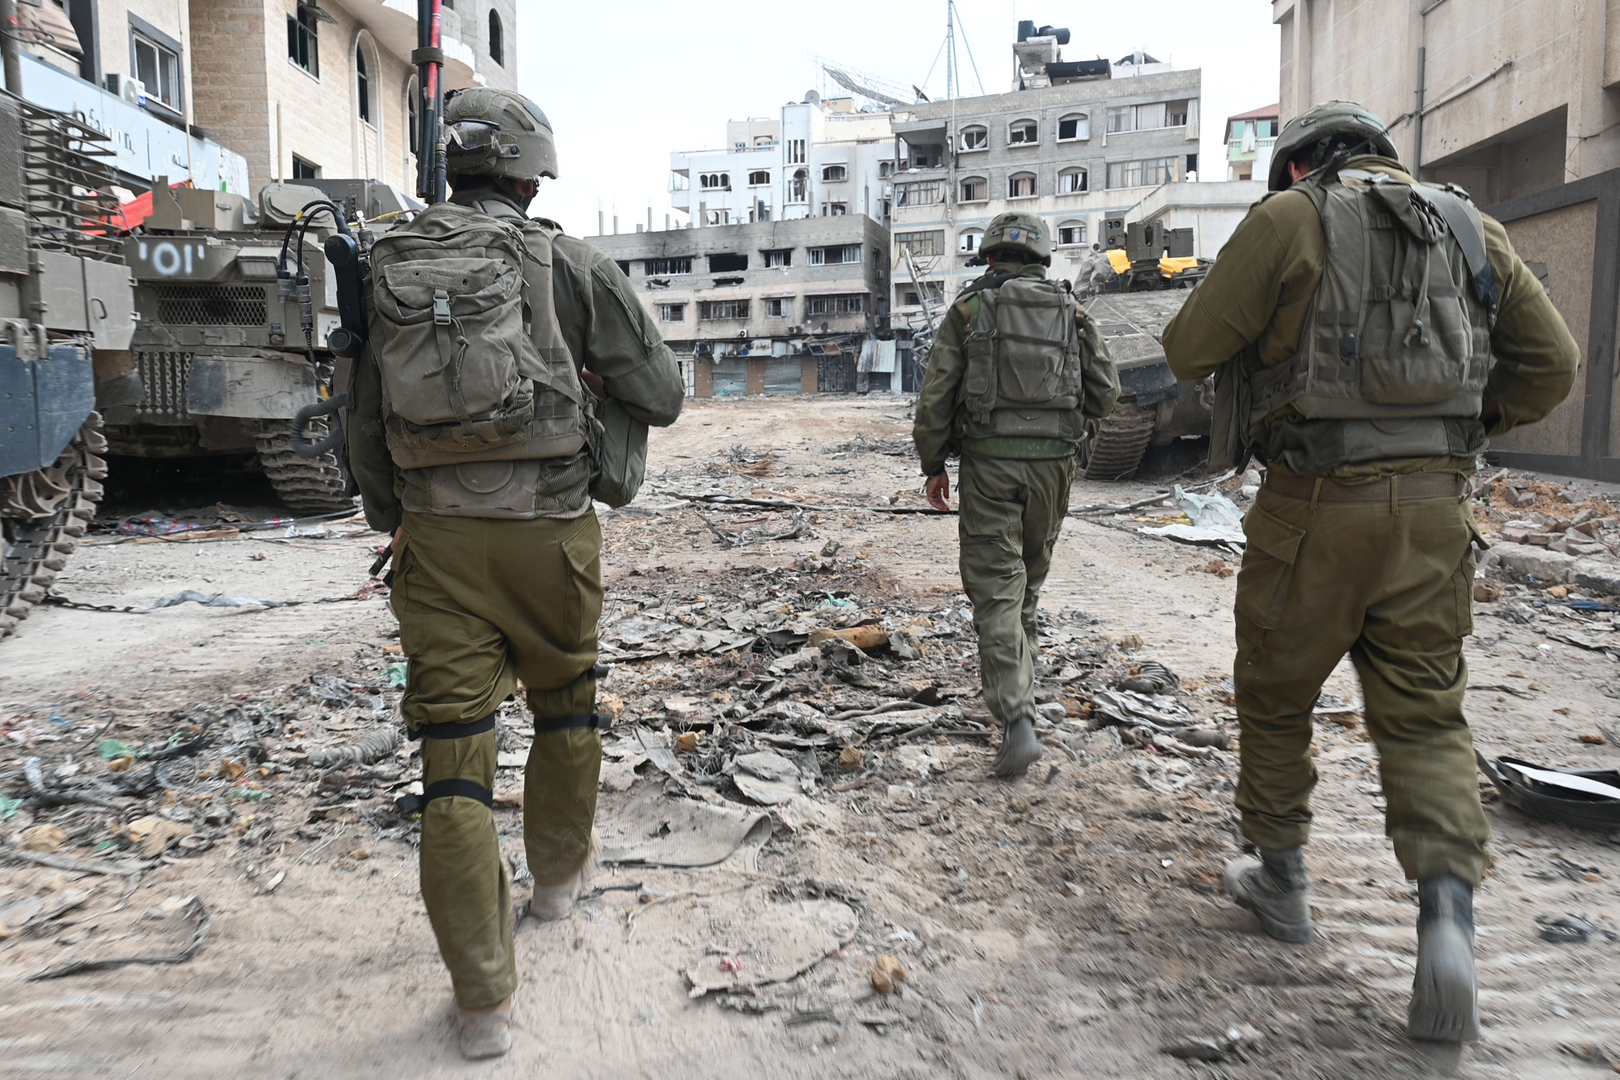 الجيش الإسرائيلي يسحب لواء المظليين 646 الاحتياطي من غزة